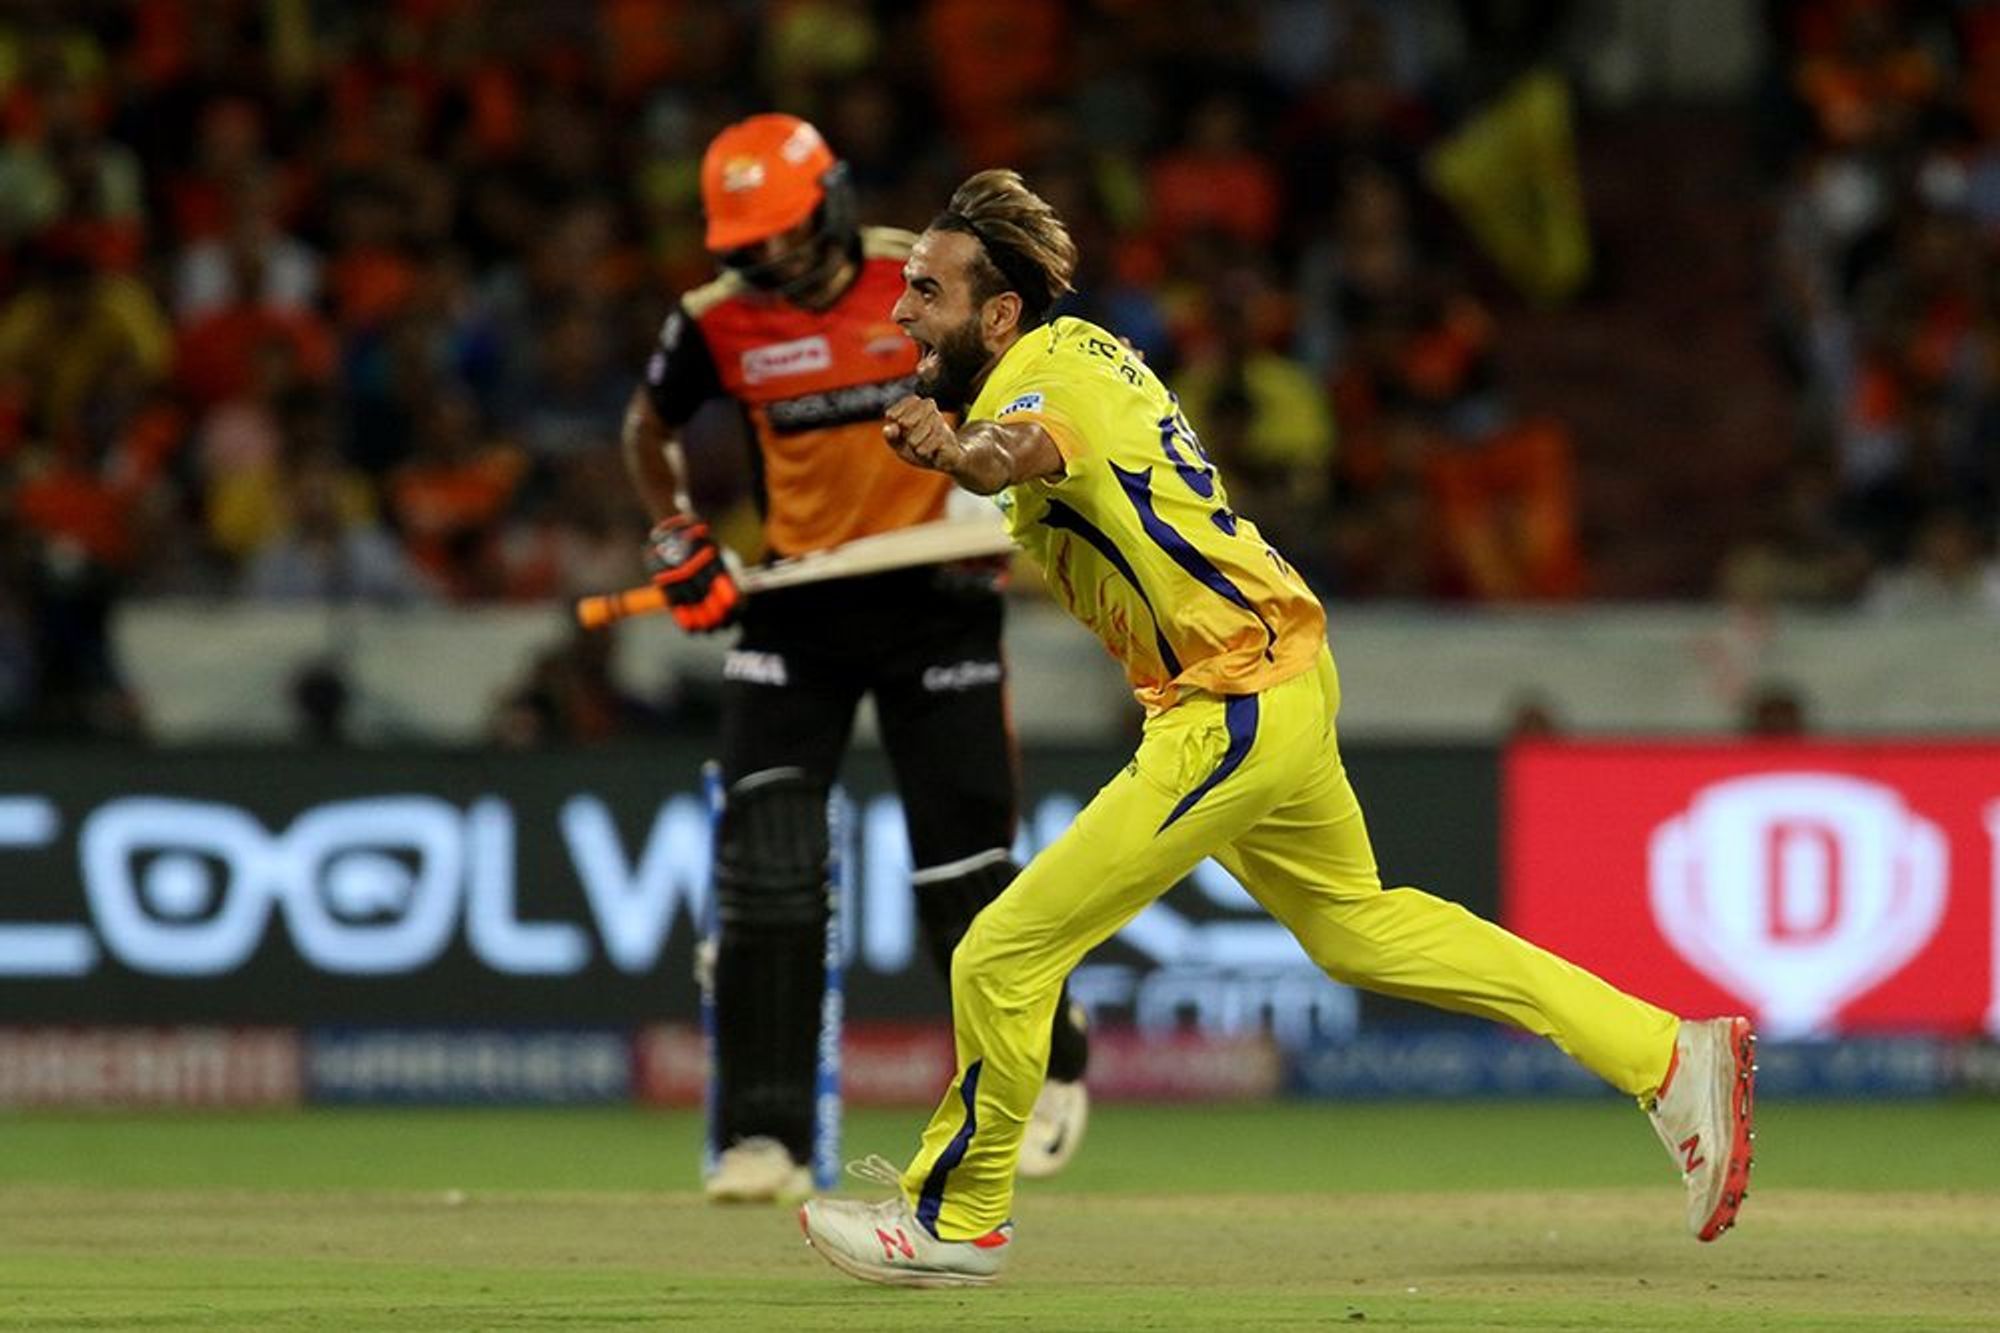 सनराइजर्स हैदराबाद की जीत के बावजूद विजय शंकर जमकर हुए ट्रोल, विश्व कप टीम से निकालने की मांग 3